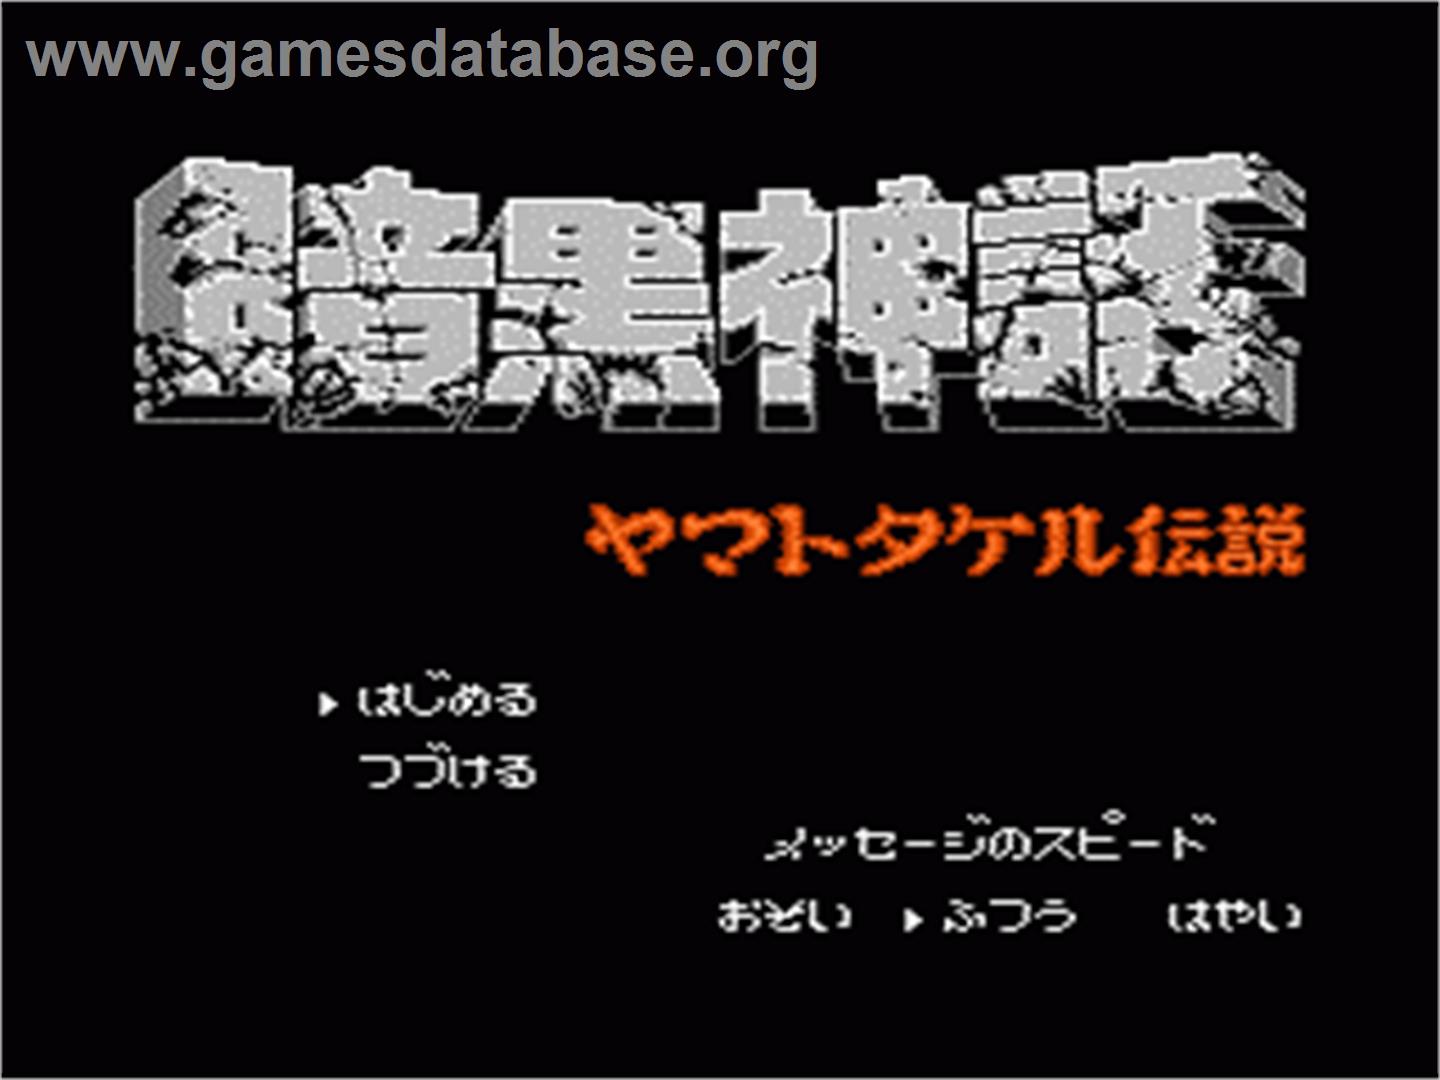 Ankoku Shinwa: Yamato Takeru Densetsu - Nintendo NES - Artwork - Title Screen